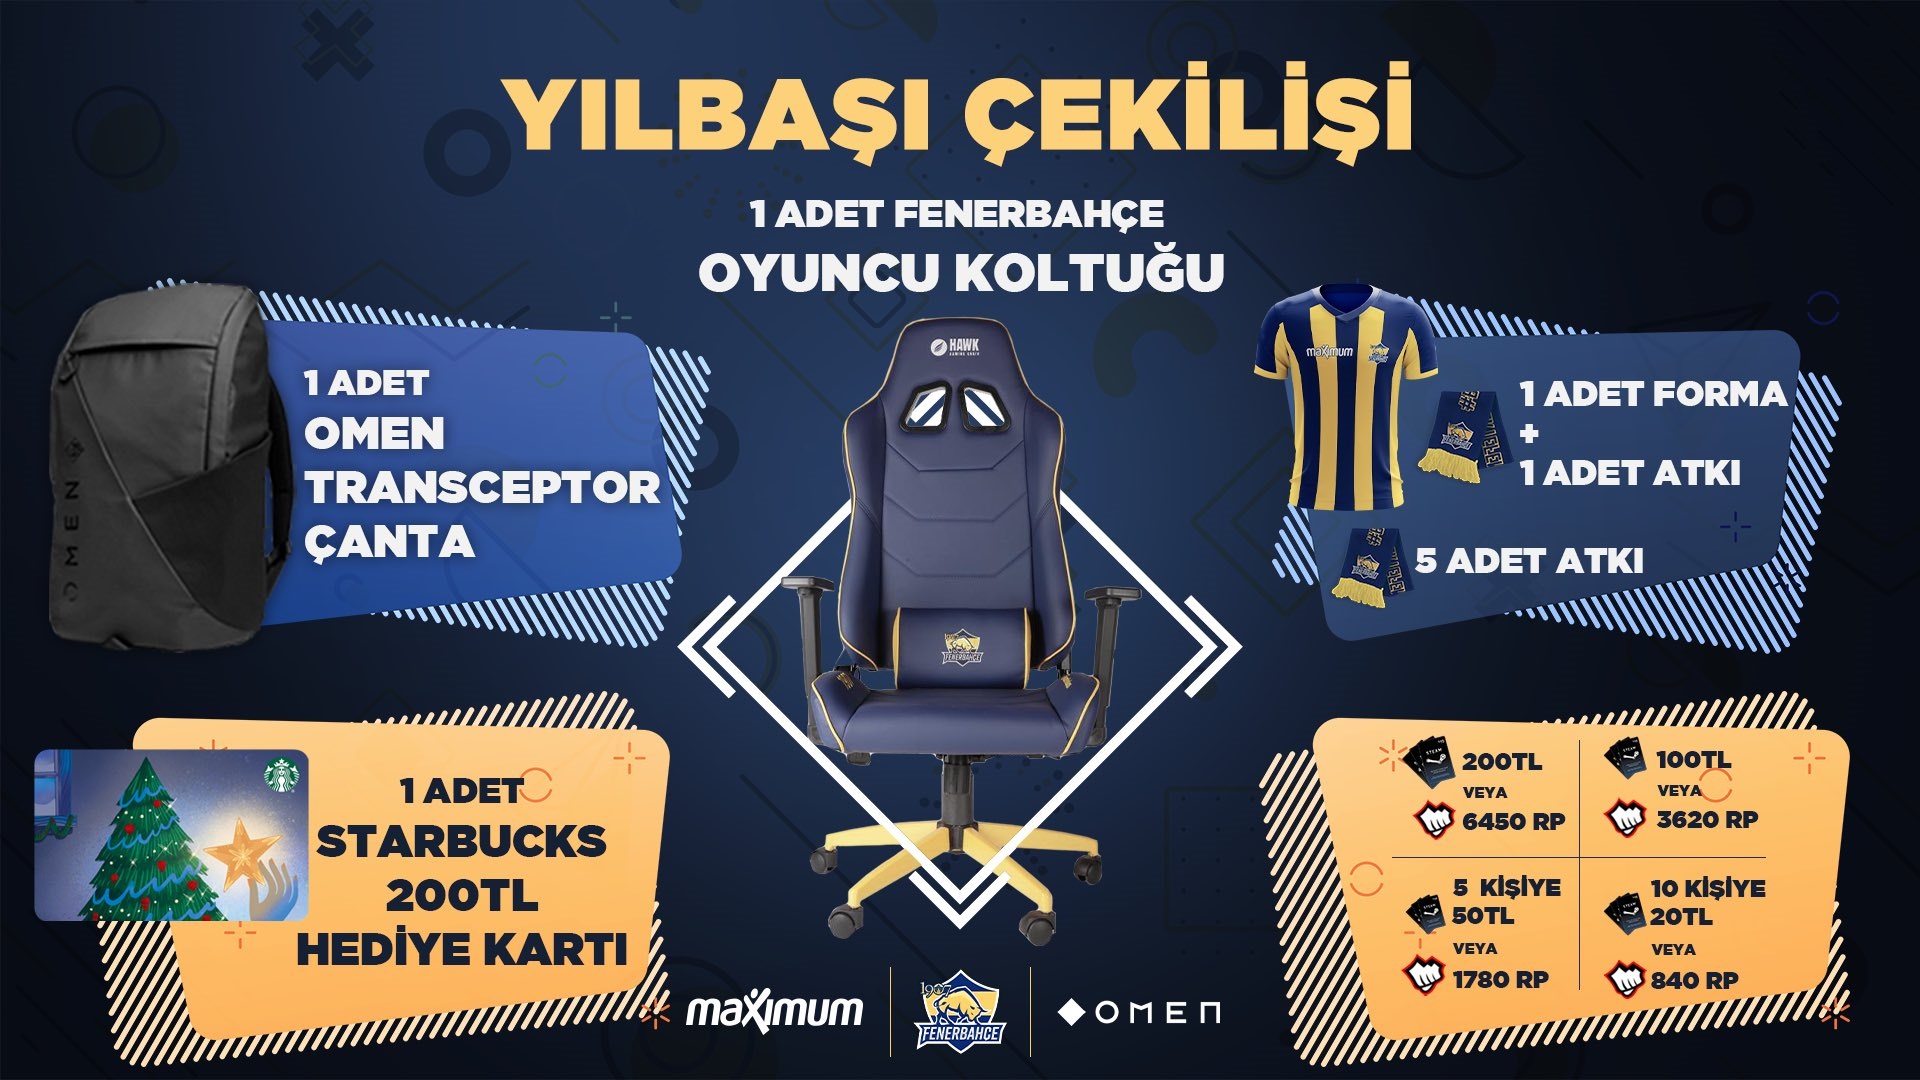 1907 Fenerbahçe Espor yılbaşı çekilişi düzenliyor!